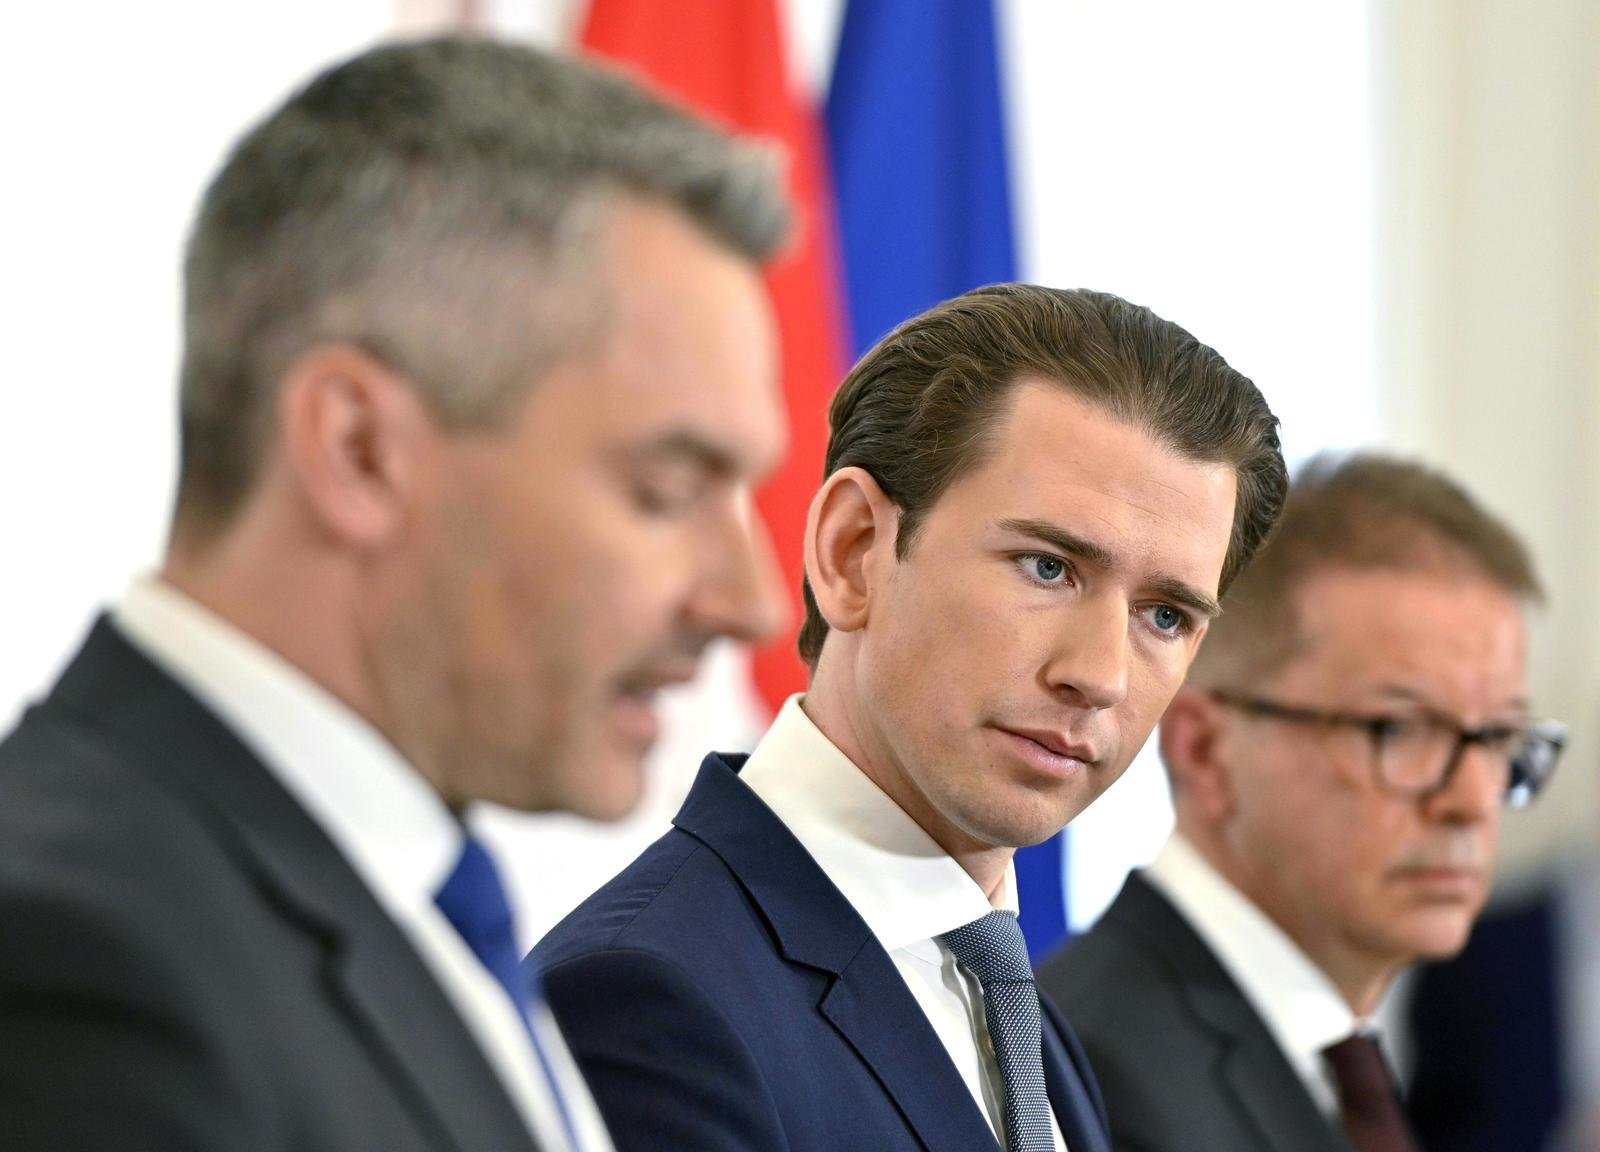 Regierung in Quarantäne: Das sagt Österreich